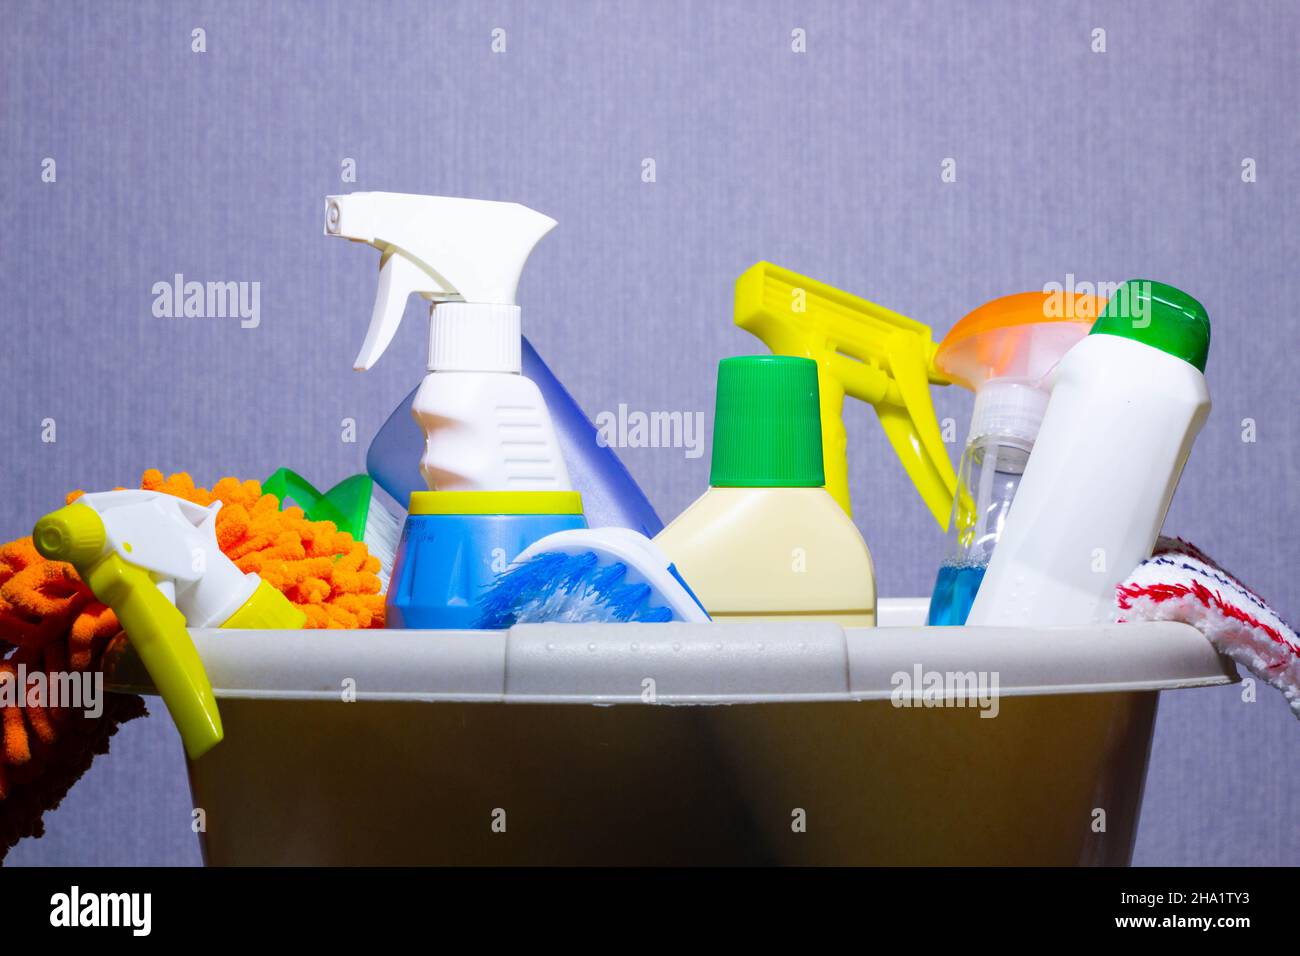 Detergente para lavar platos fotografías e imágenes de alta resolución -  Alamy